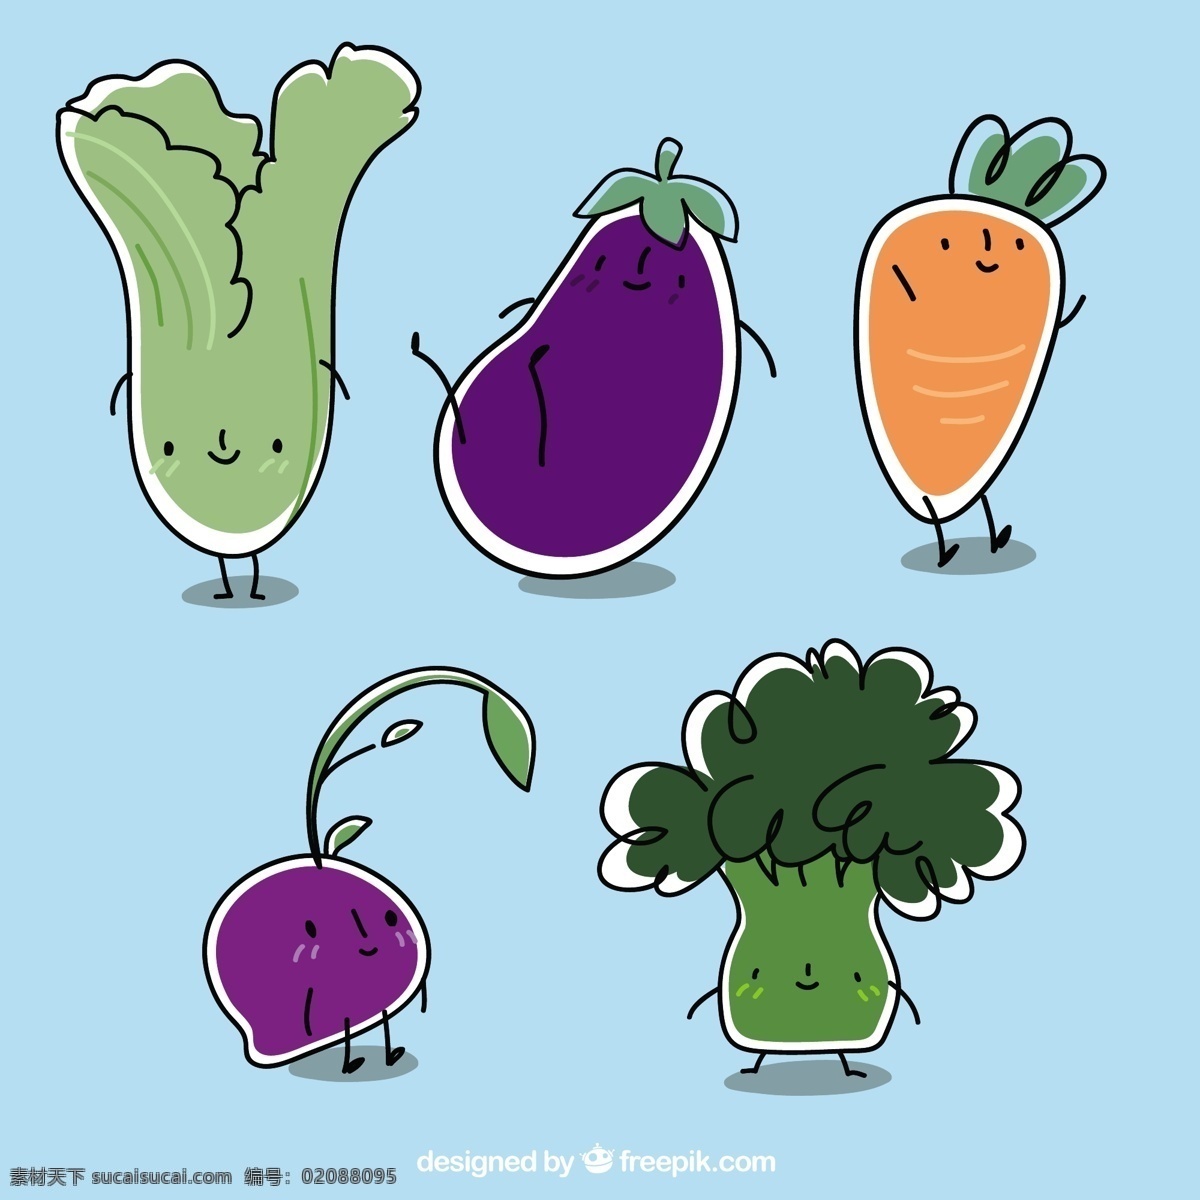 手绘 可爱 蔬菜 元素 手绘蔬菜元素 手绘蔬菜 矢量蔬菜 卡通蔬菜 青色 天蓝色